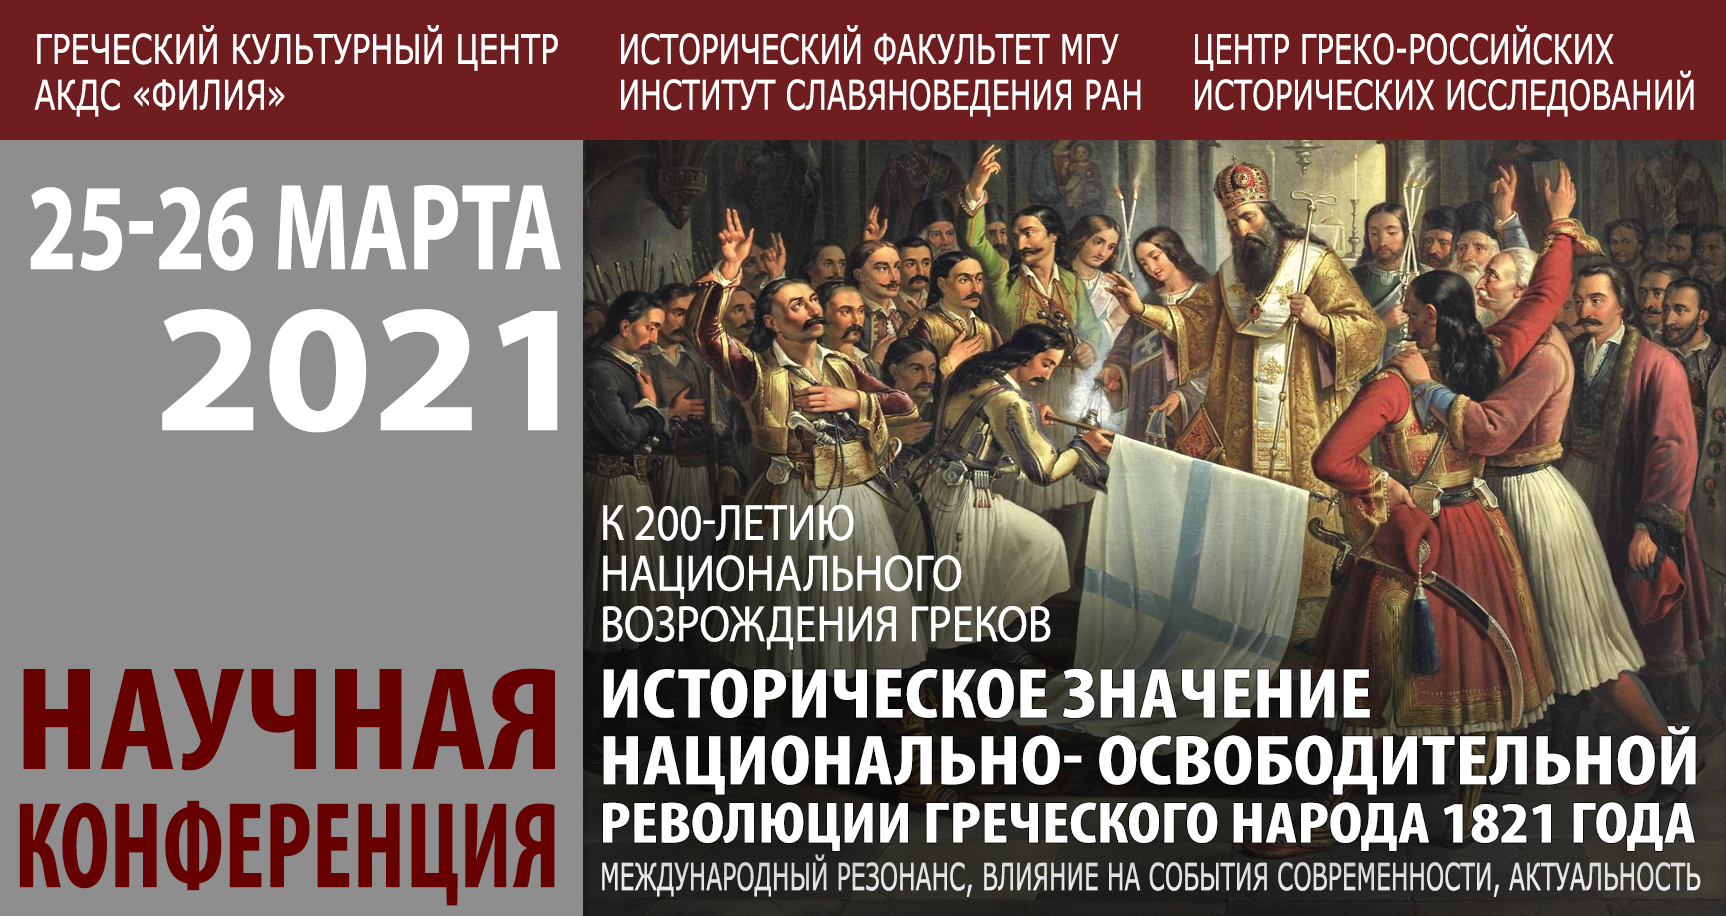 Участие в конференции "Историческое значение Национально-освободительной революции греческого народа 1821 года"